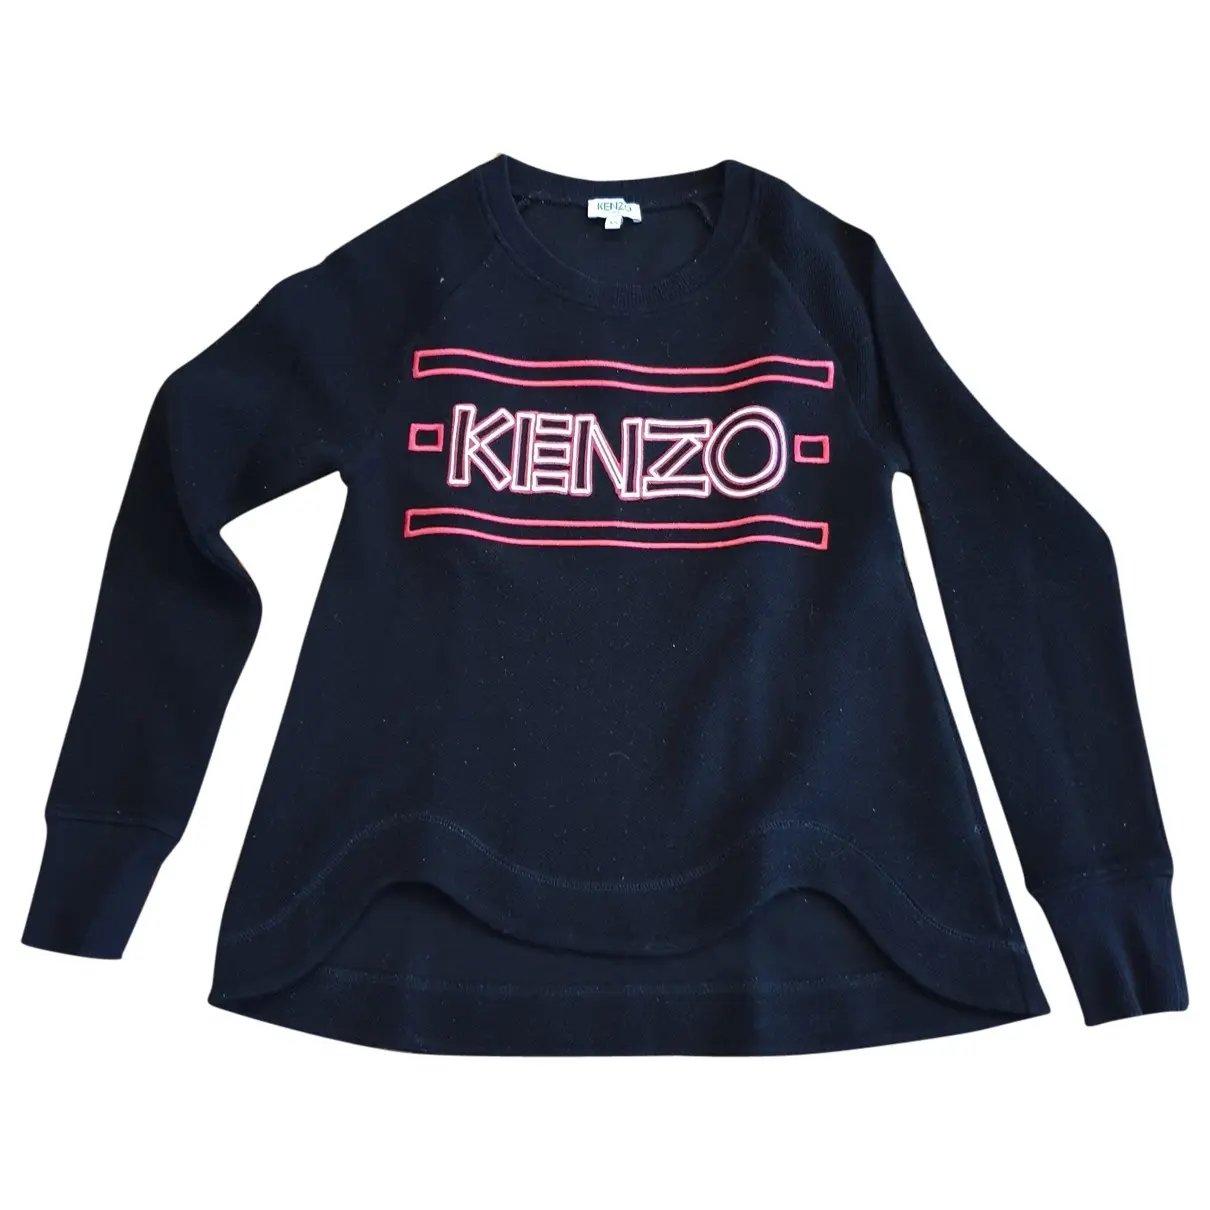 Wool sweatshirt Kenzo